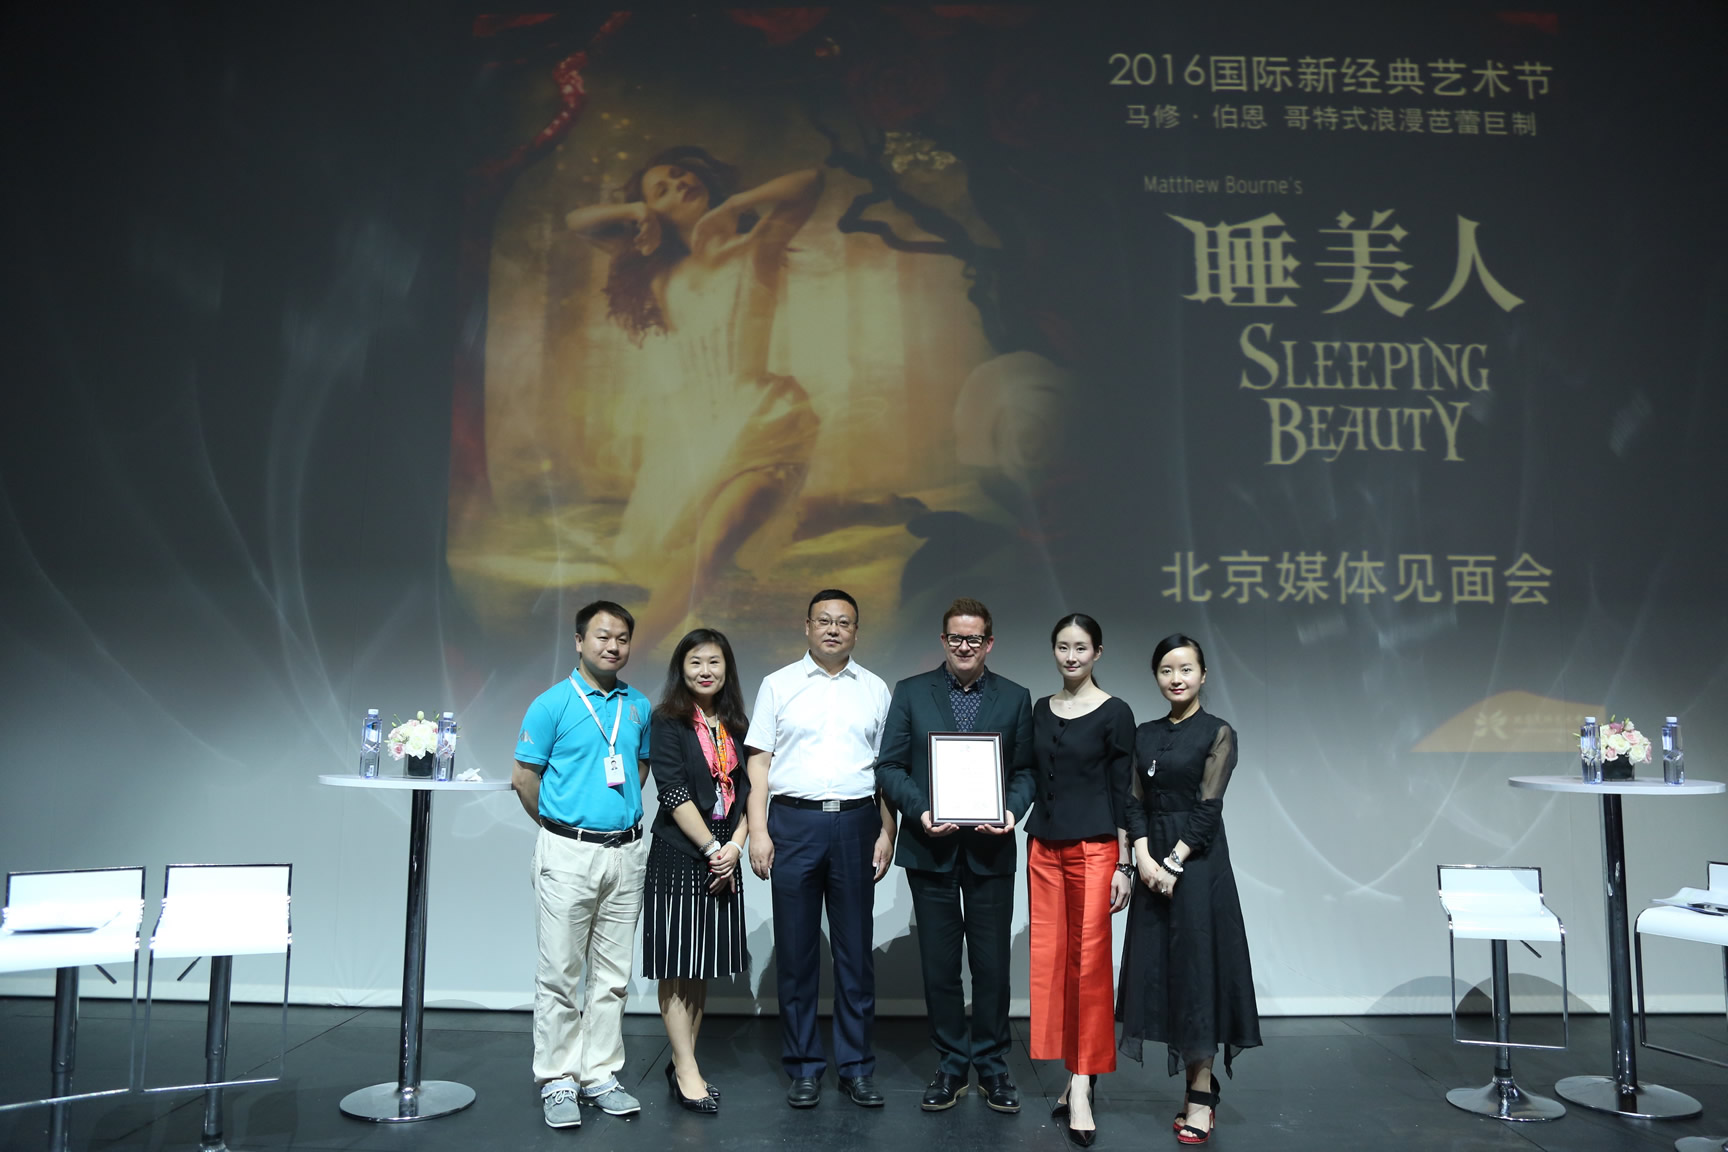 编舞大师马修•伯恩爵士首访京城 9月携舞蹈巨制《睡美人》亮相天桥艺术中心